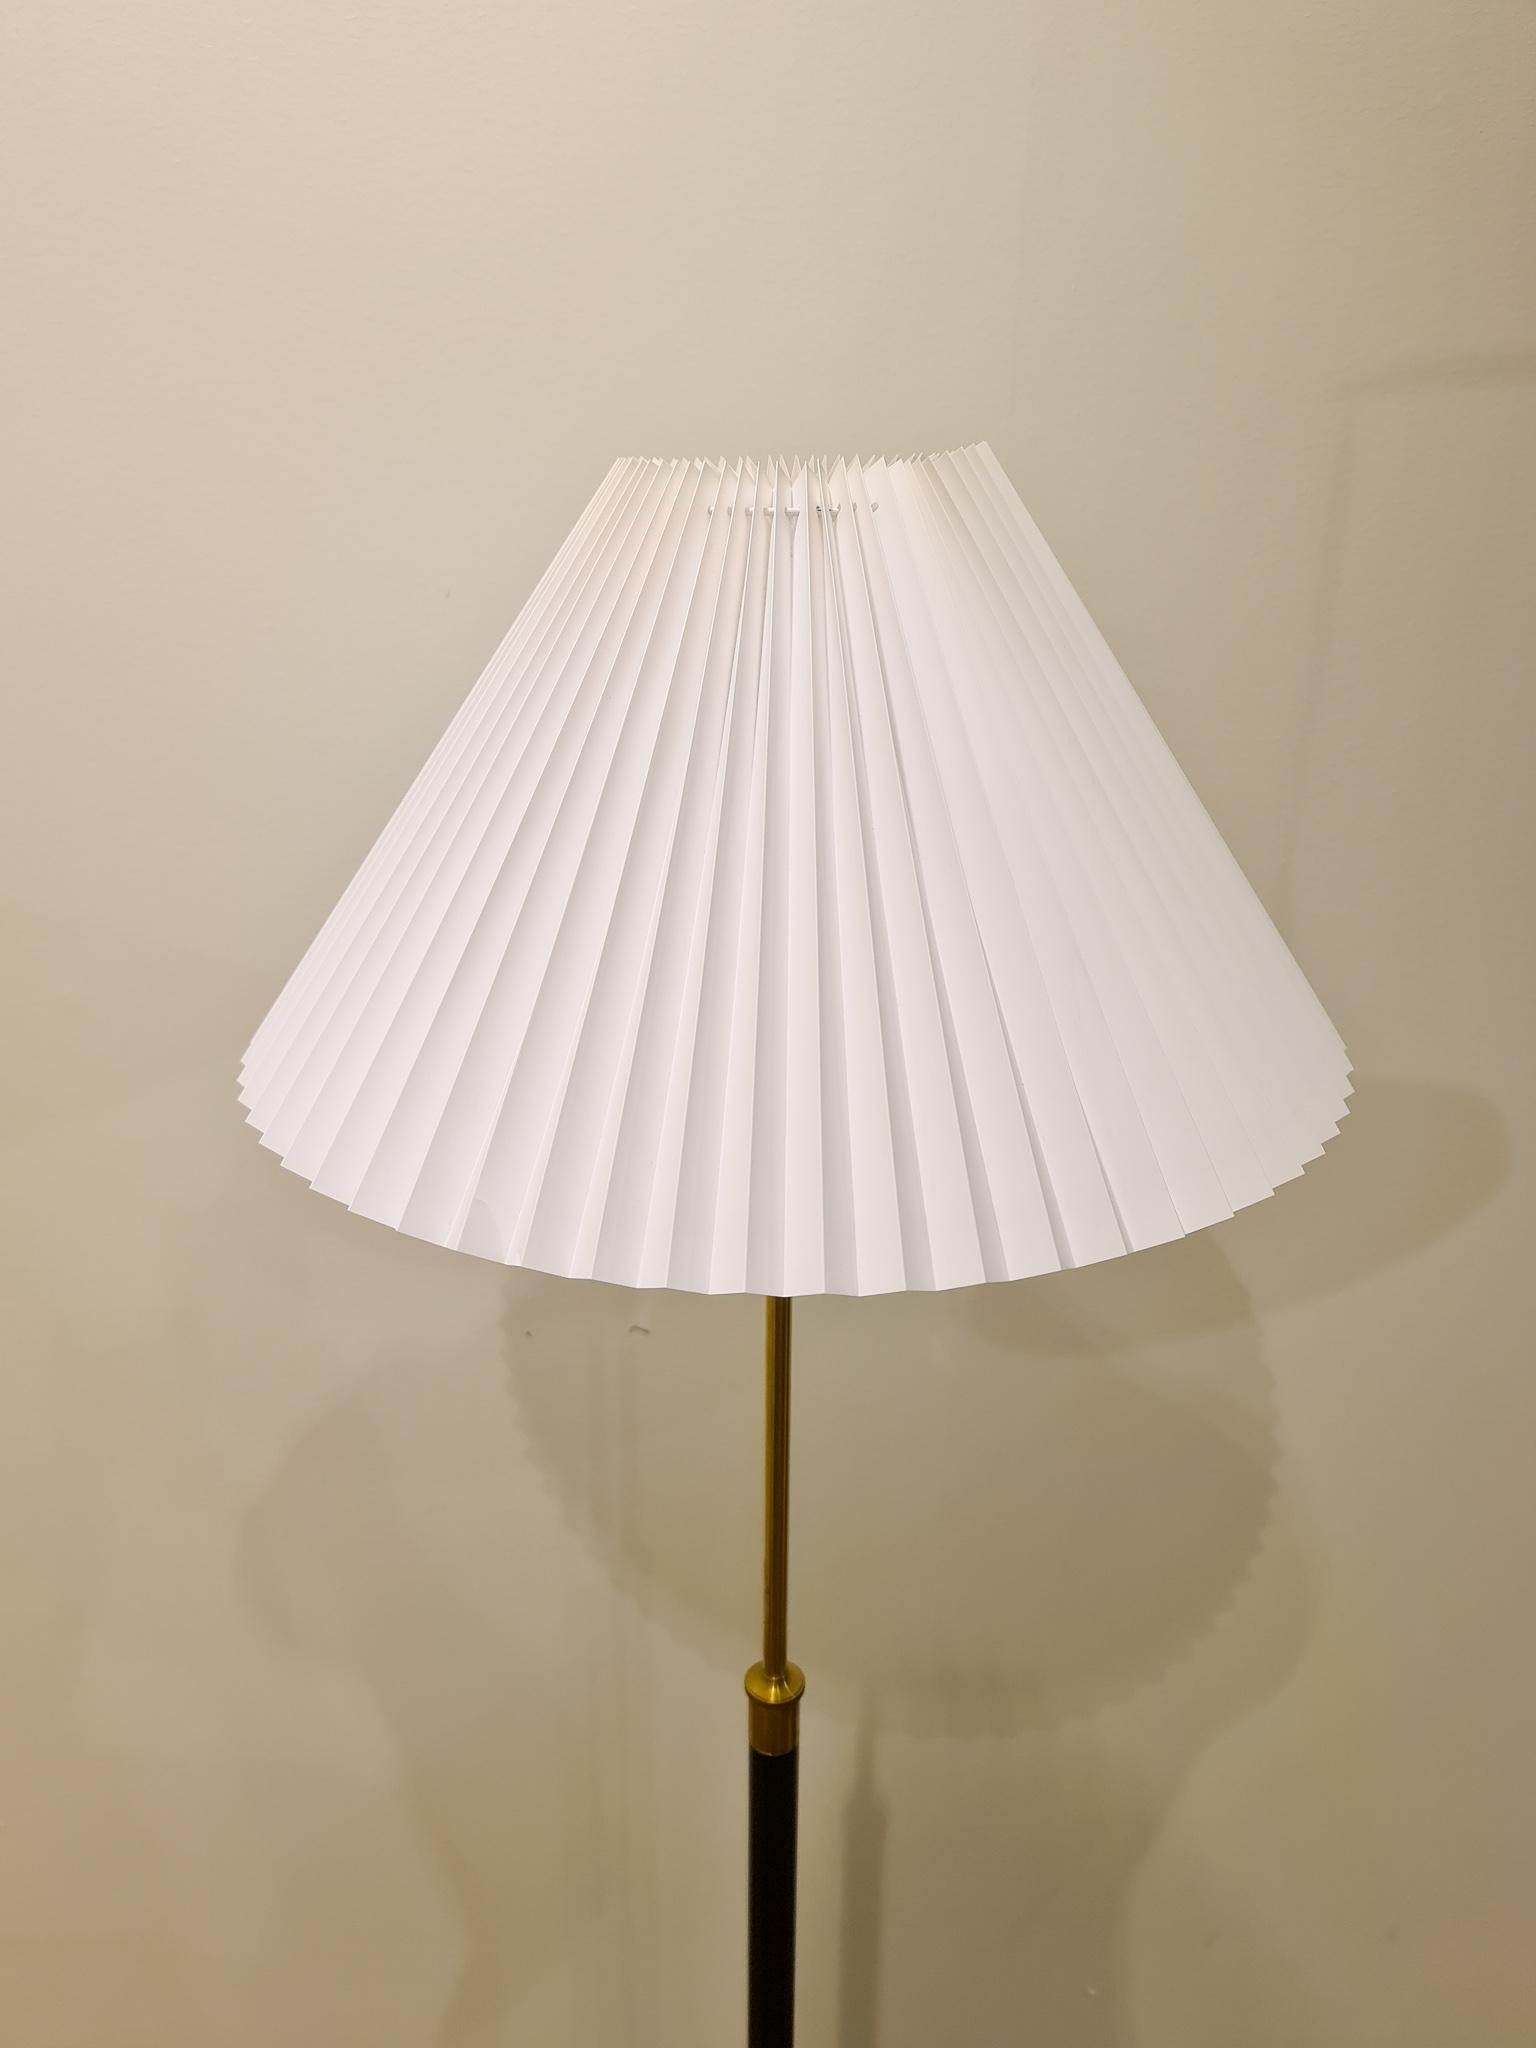 Brass Danish Midcentury Le Klint Floor Lamp No 351 Designed by Aage Petersen, Denmark